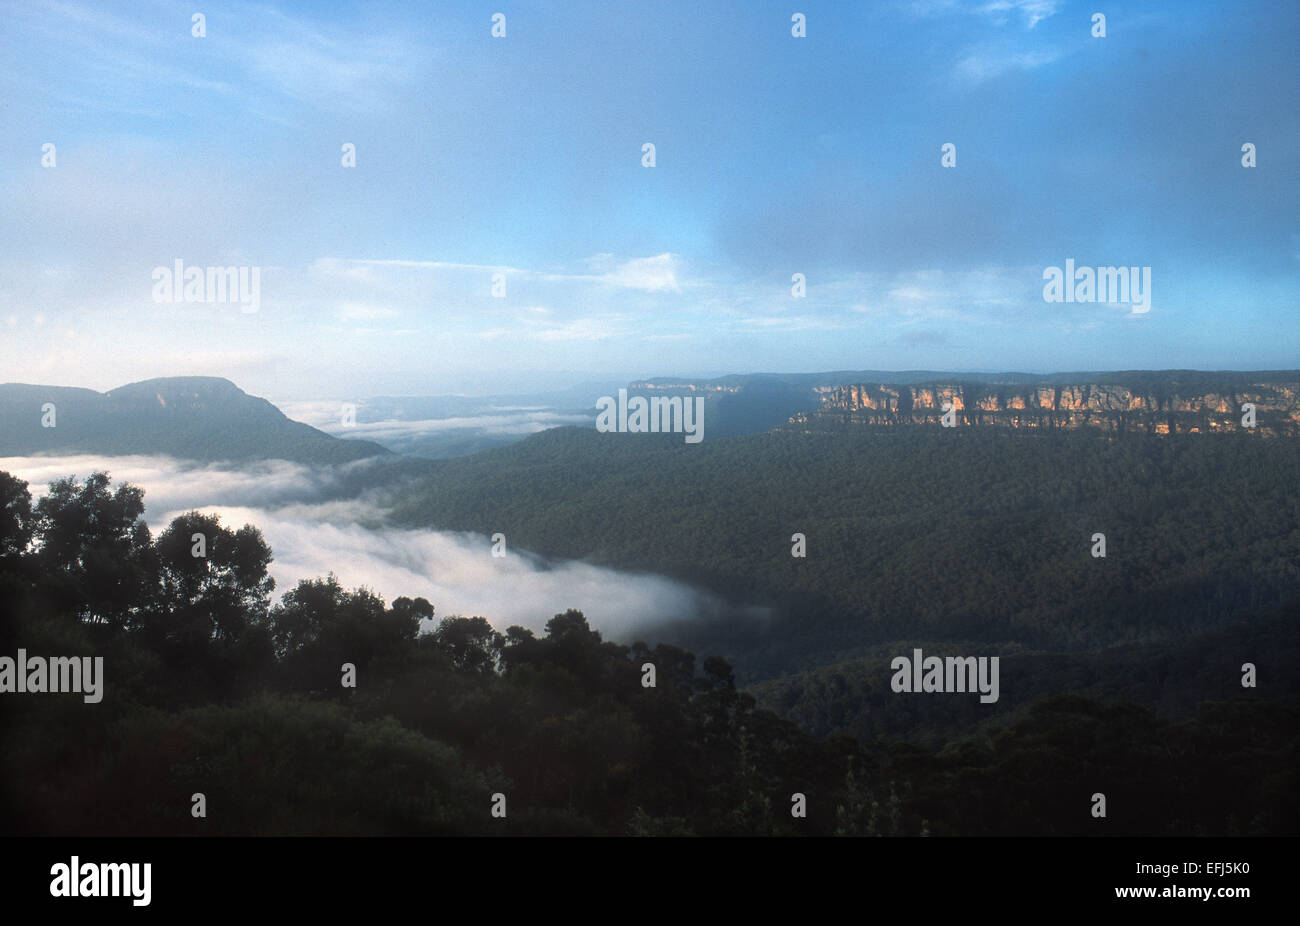 Une vue sur la magnifique vallée Jamison, situé dans la région de Blue Mountains National Park, New South Wales, Australie Banque D'Images